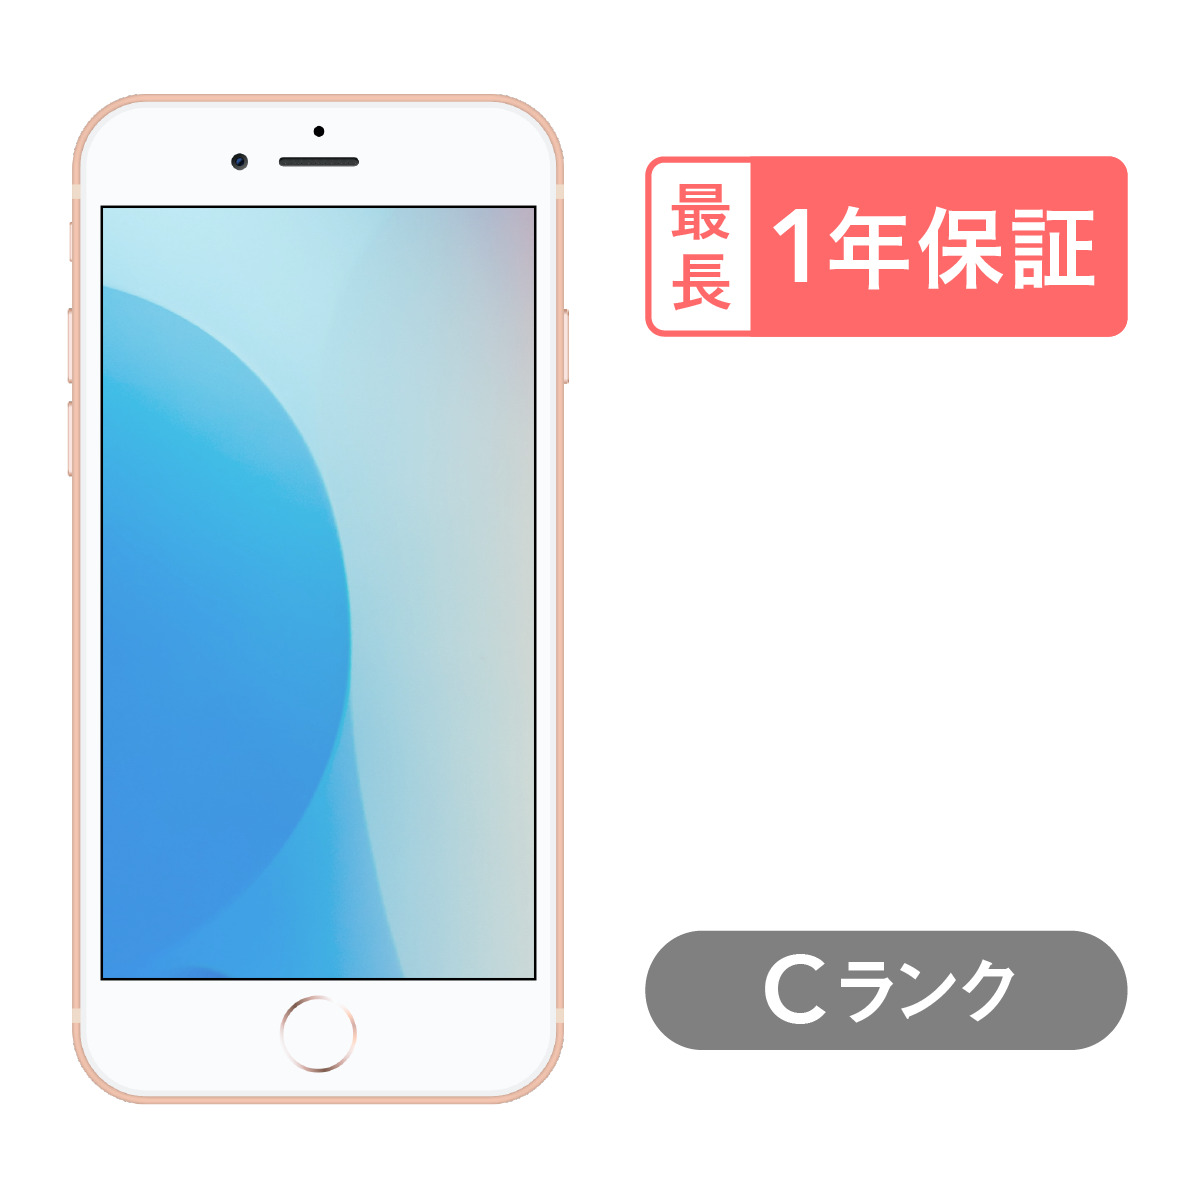 【楽天市場】iPhone 8 Plus 256GB 中古 スマホ